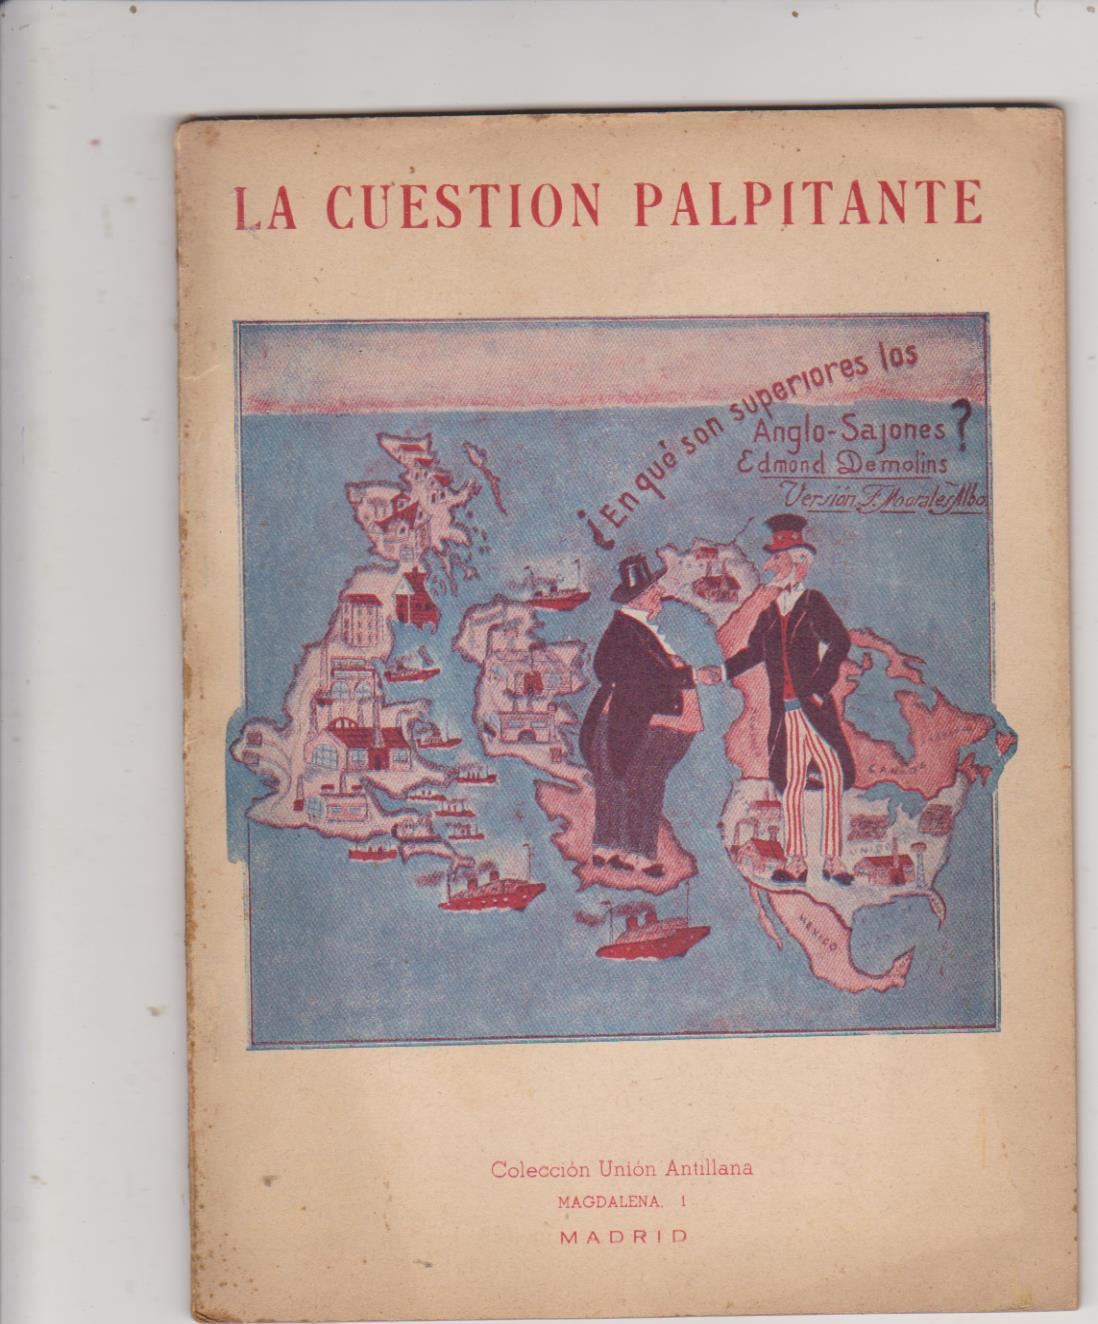 Edmond Demolins. la cuestión palpitante. Colección Unión antillana-Madrid 1948